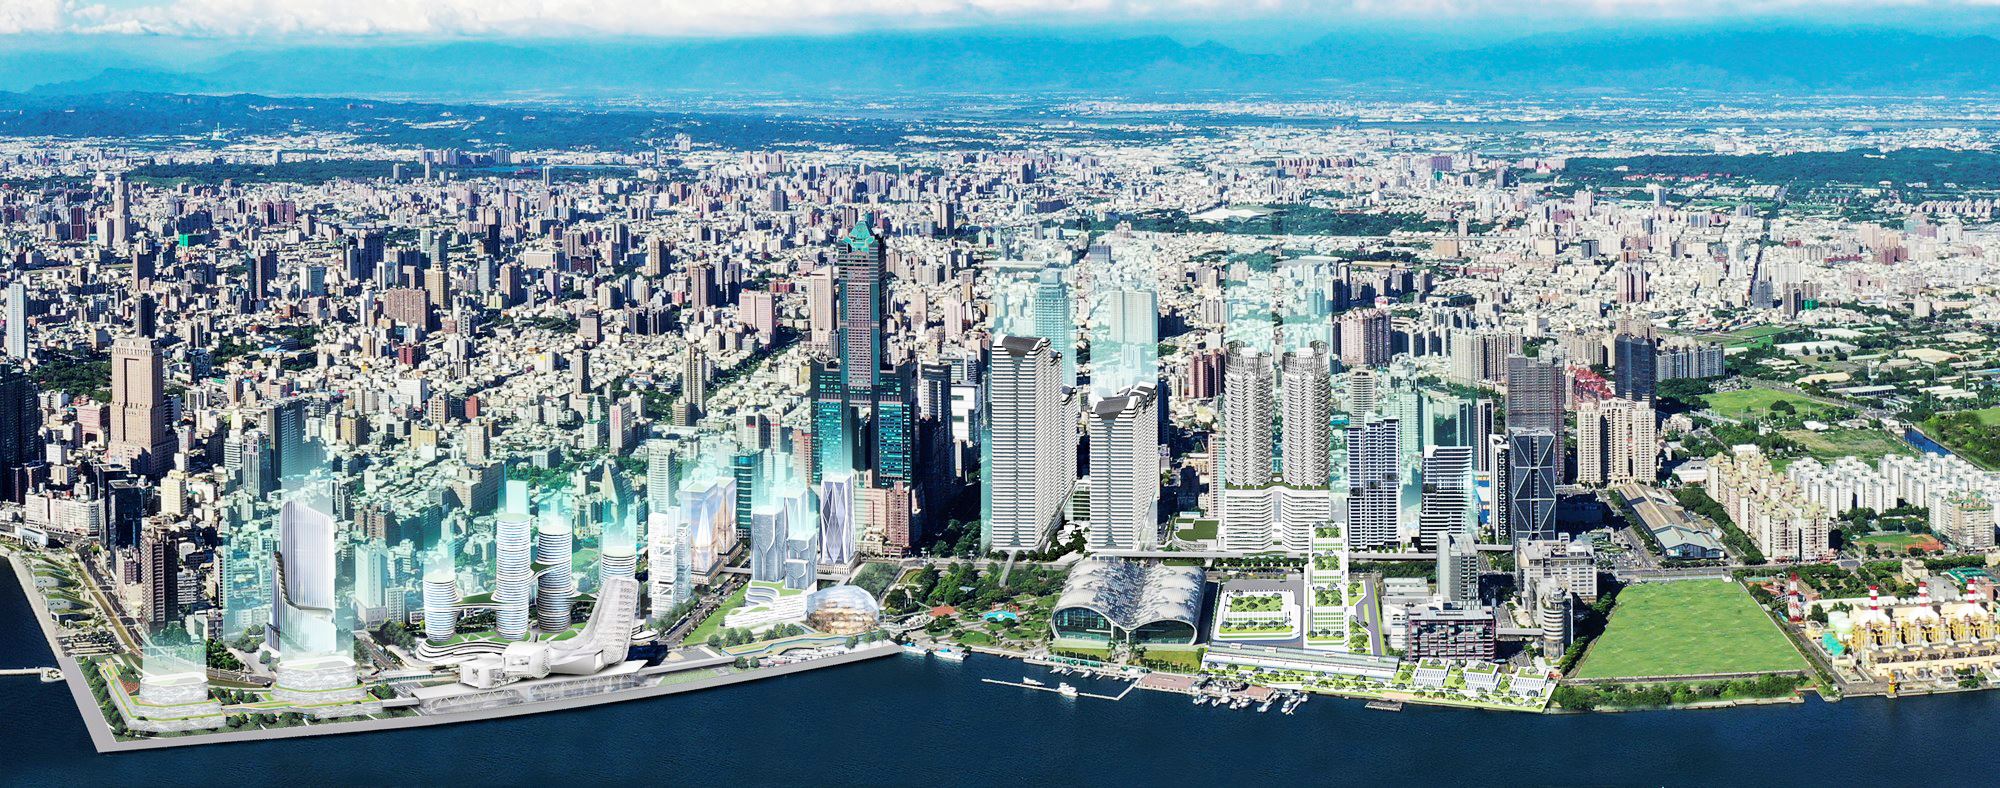 高雄亞灣2.0計畫行政院核定通過  預計投入170億 打造智慧創新園區 